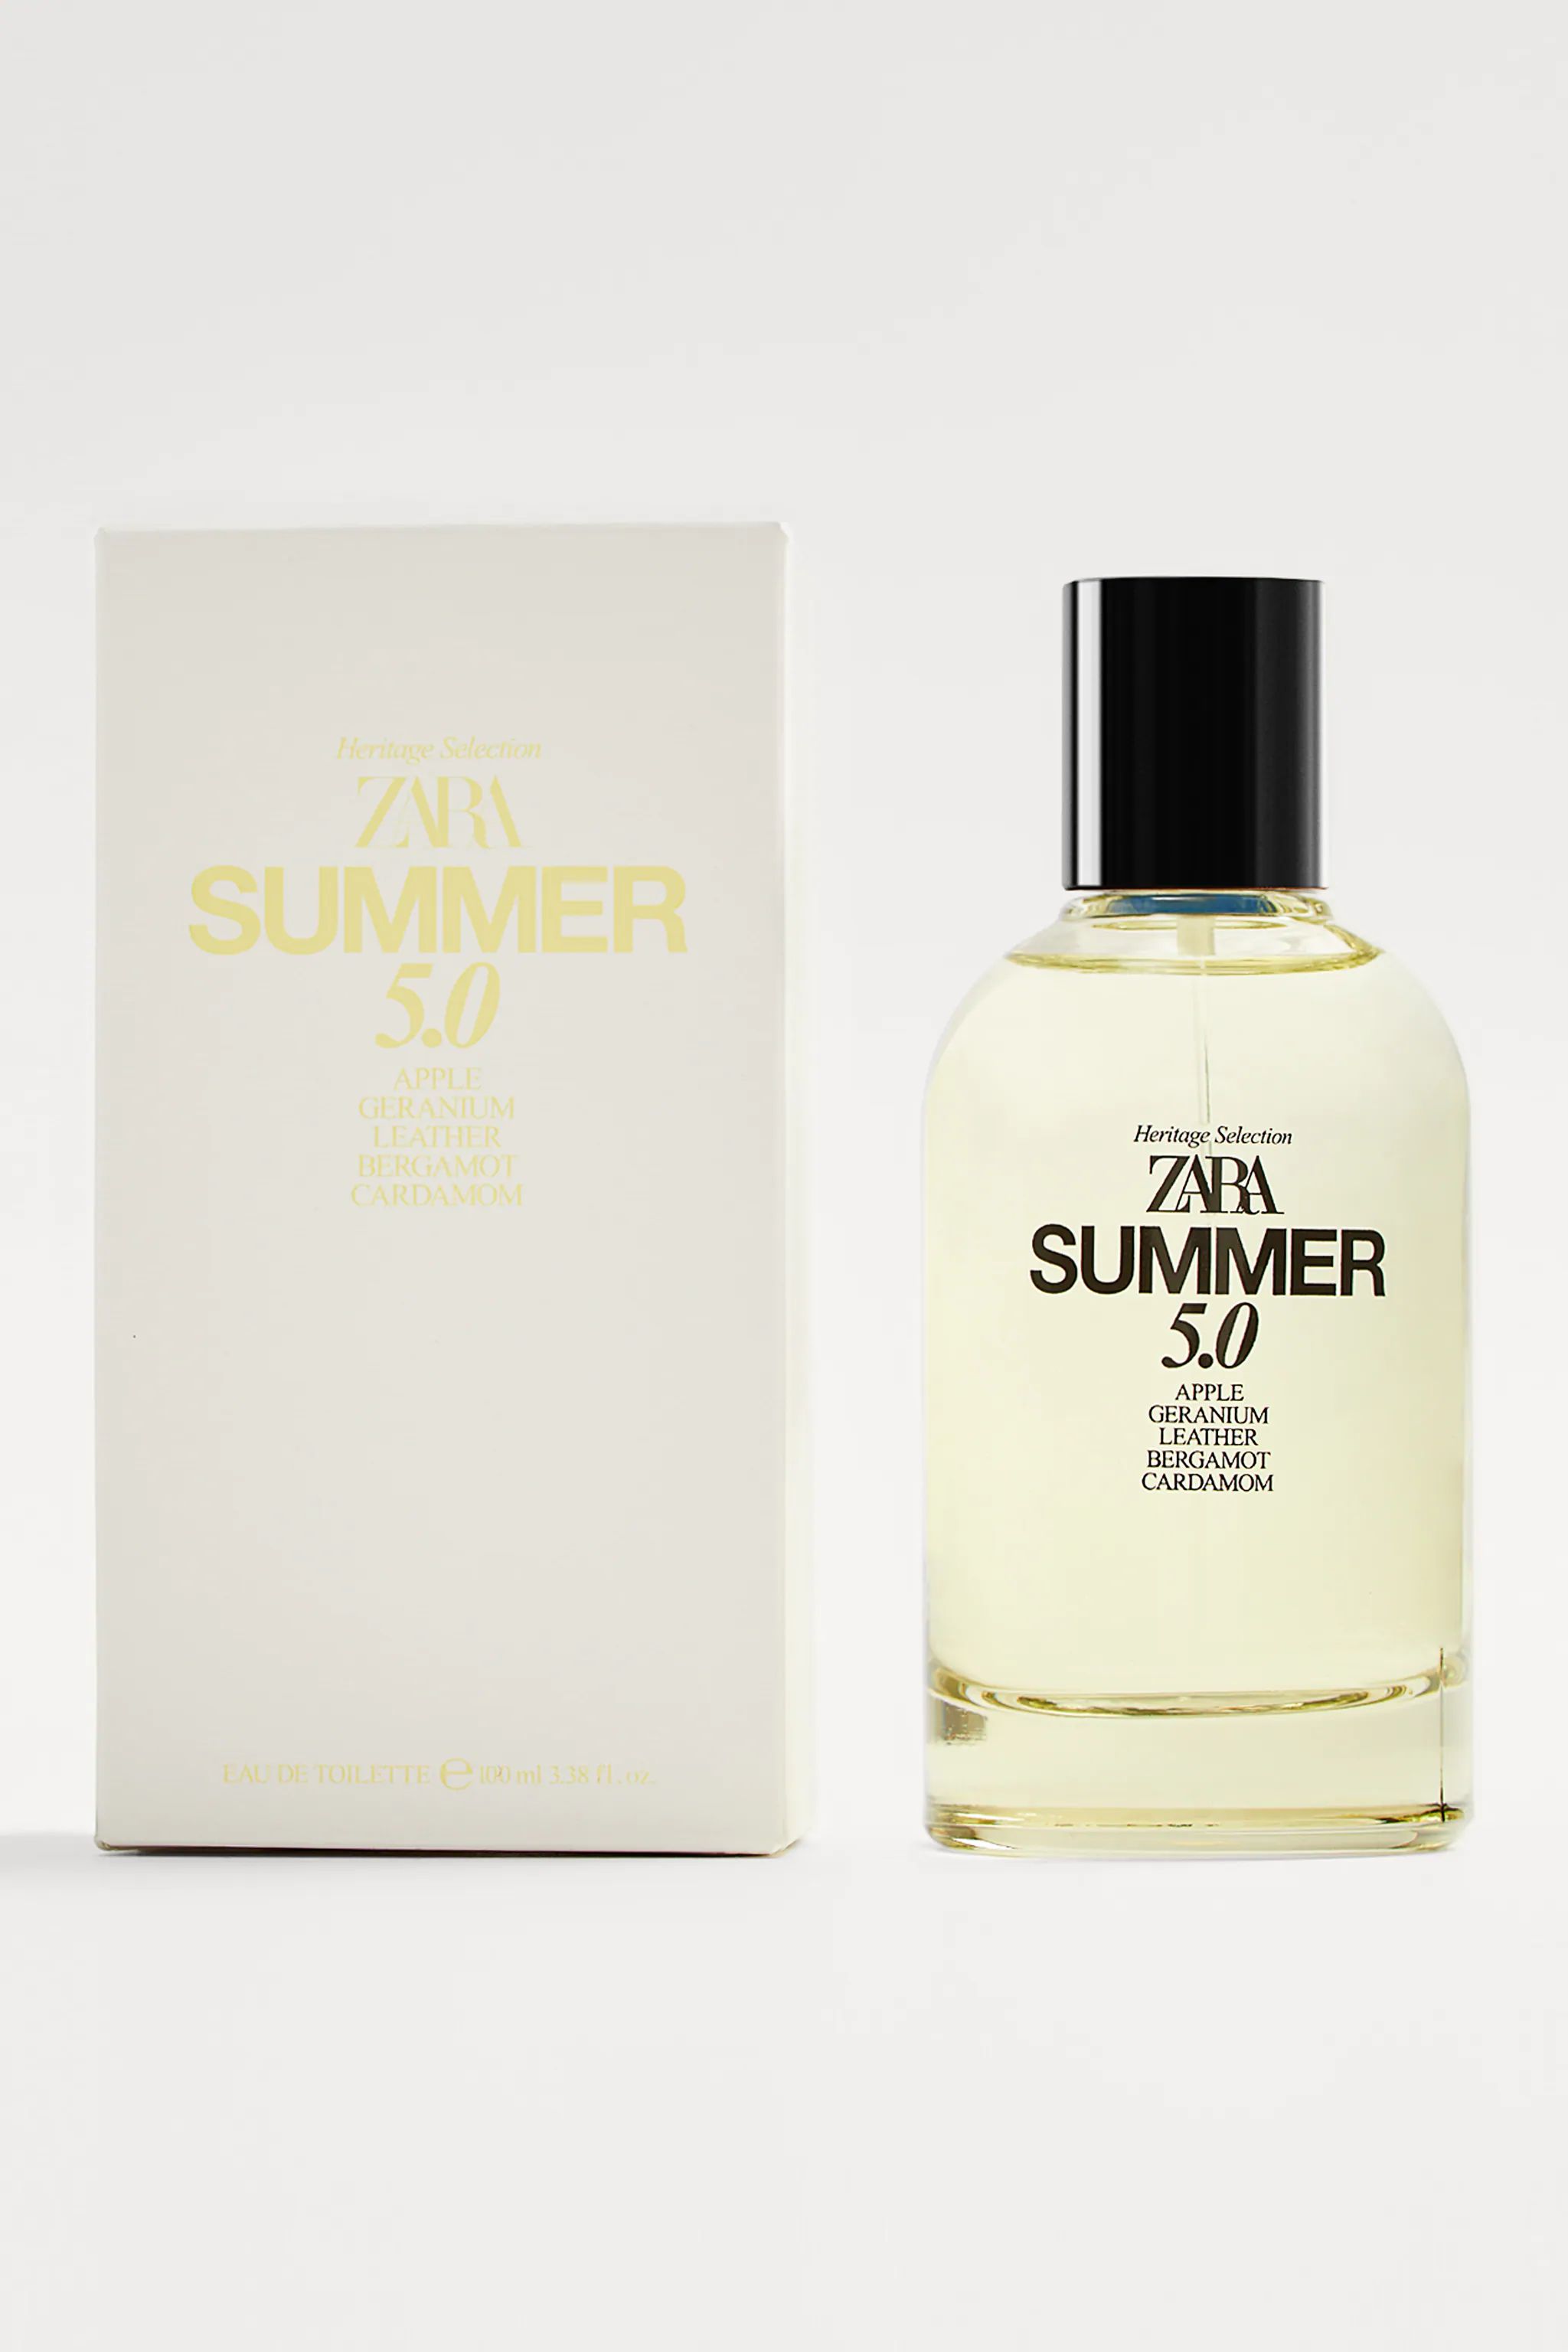 Summer 6.0 Zara Cologne - un nouveau parfum pour homme 2021